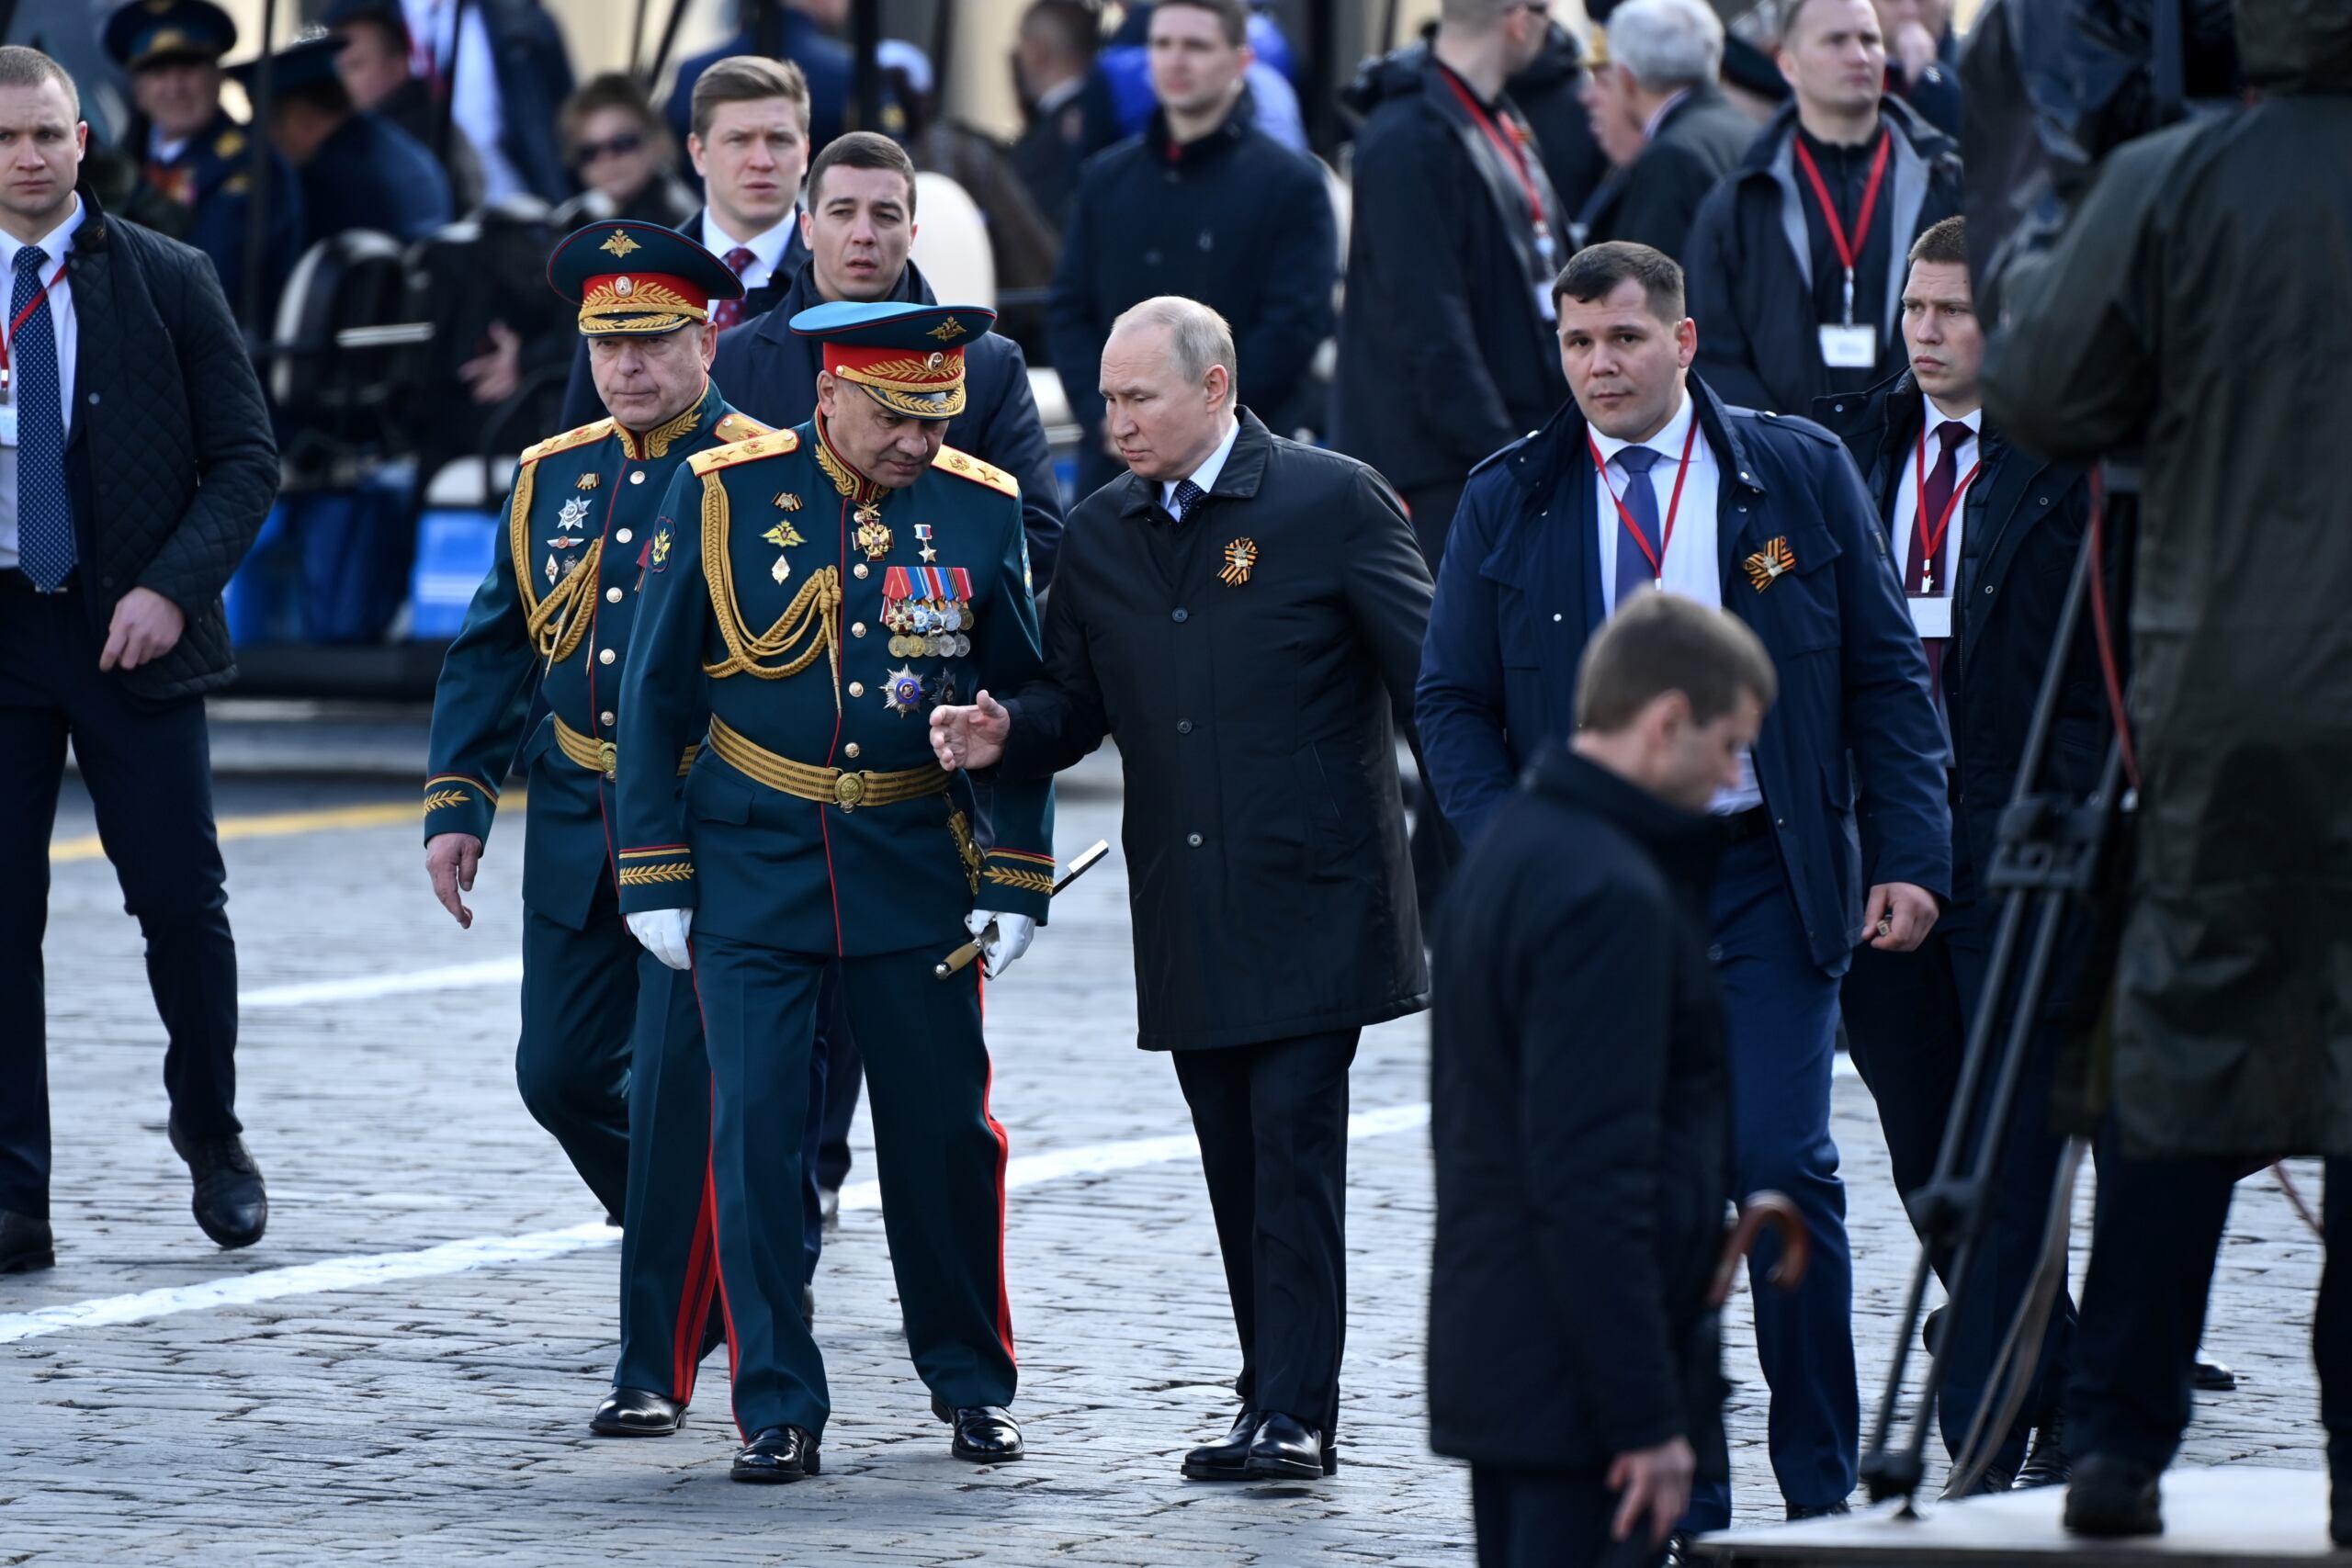 Moskwa, 9 maja. Parada w centrum stolicy. Na zdjęciu prezydent Federacji Rosyjskiej, Władimir Putin oraz minister obrony, Sergiej Szojgu